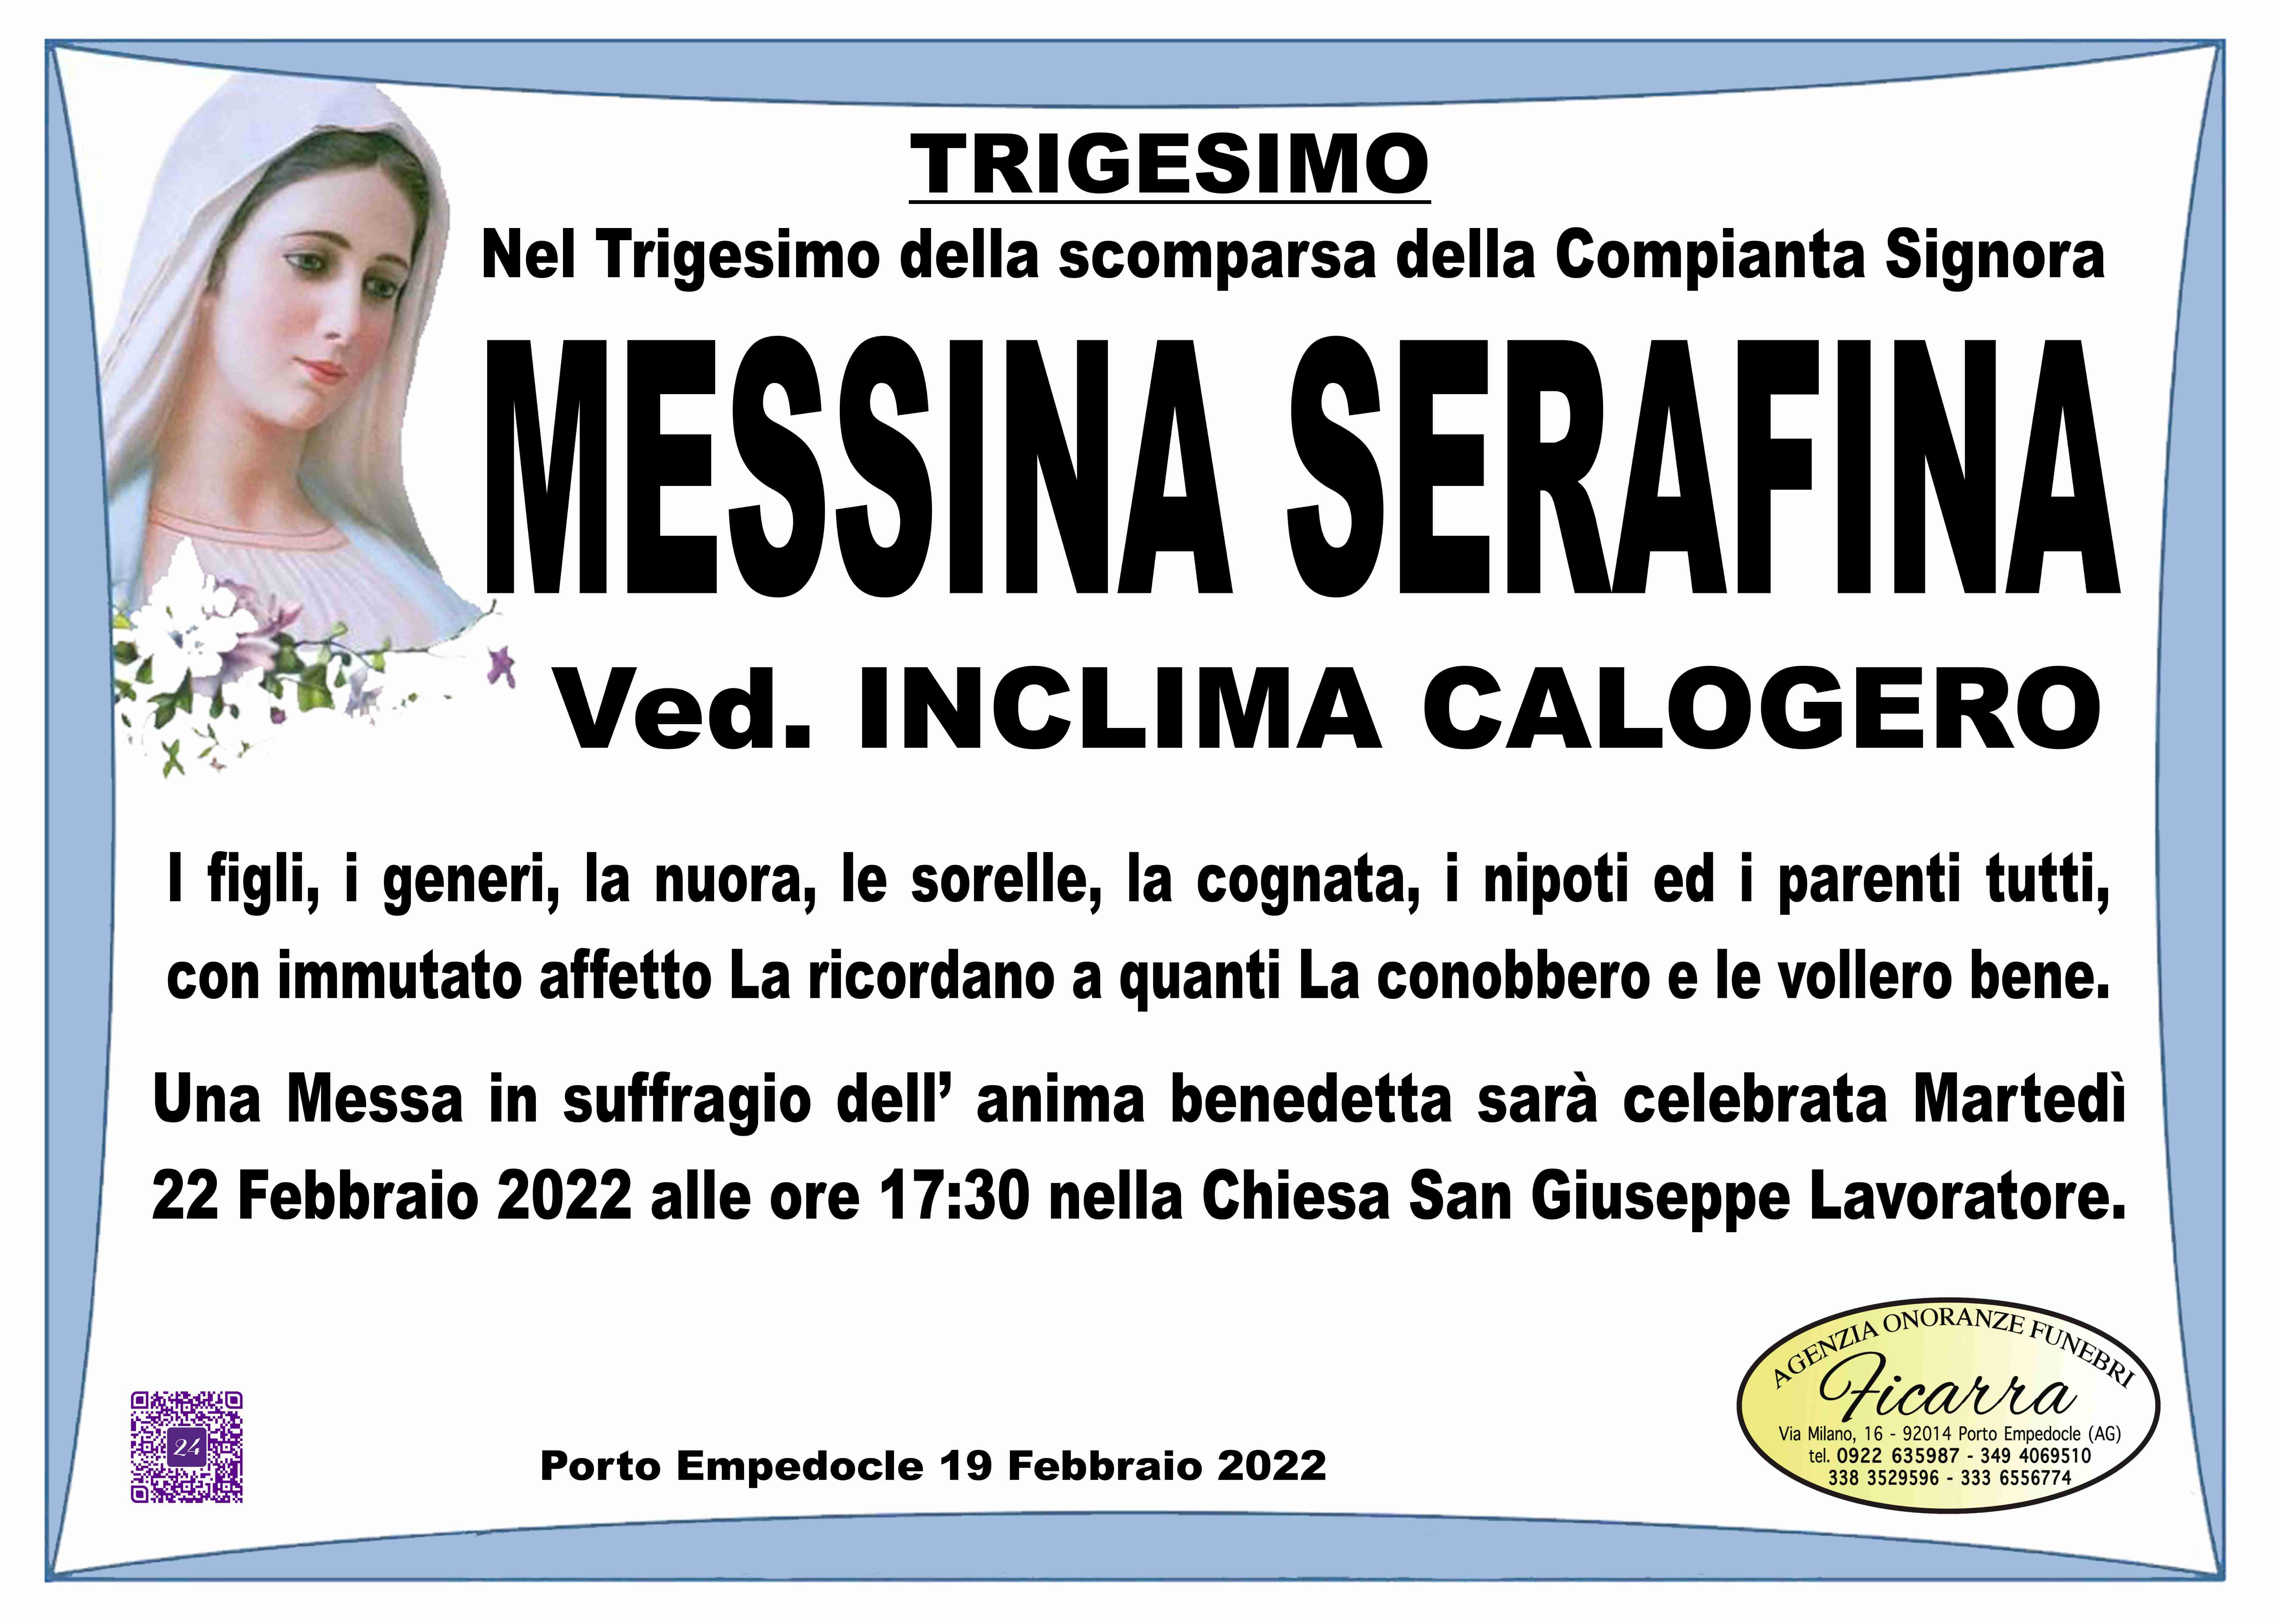 Serafina Messina